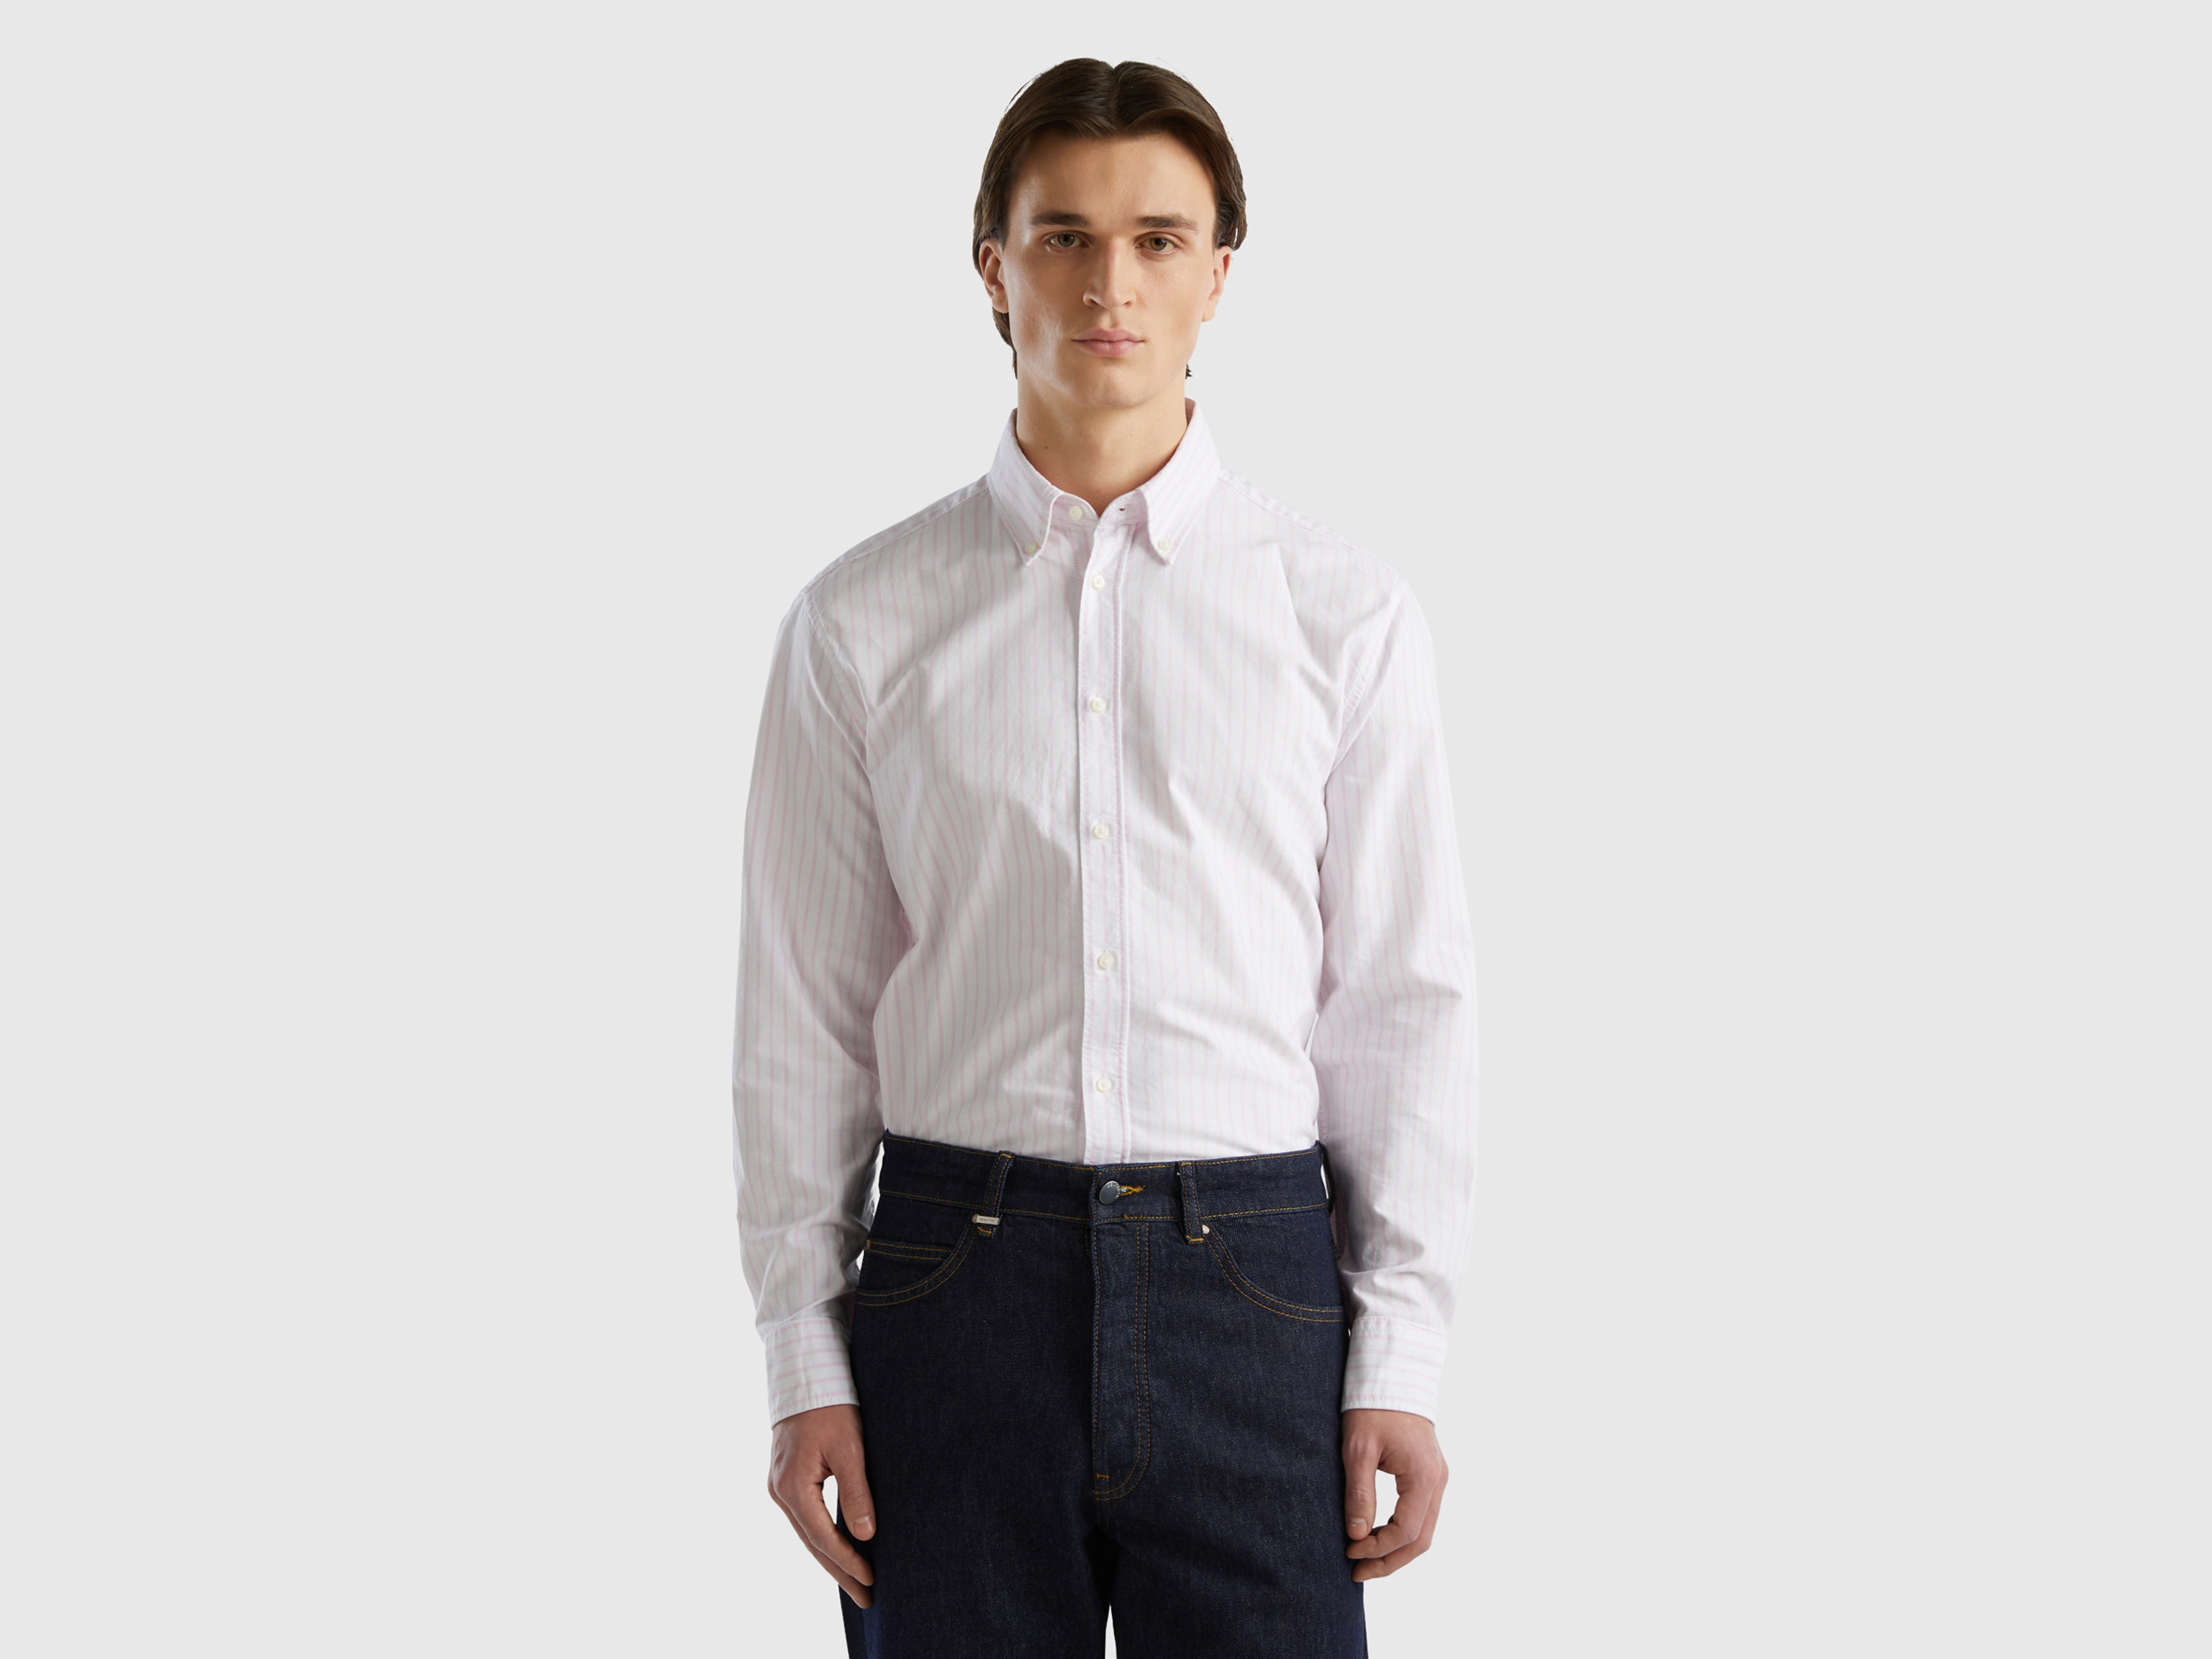 Benetton, 100% Cotton Striped Shirt, size L, White, Men